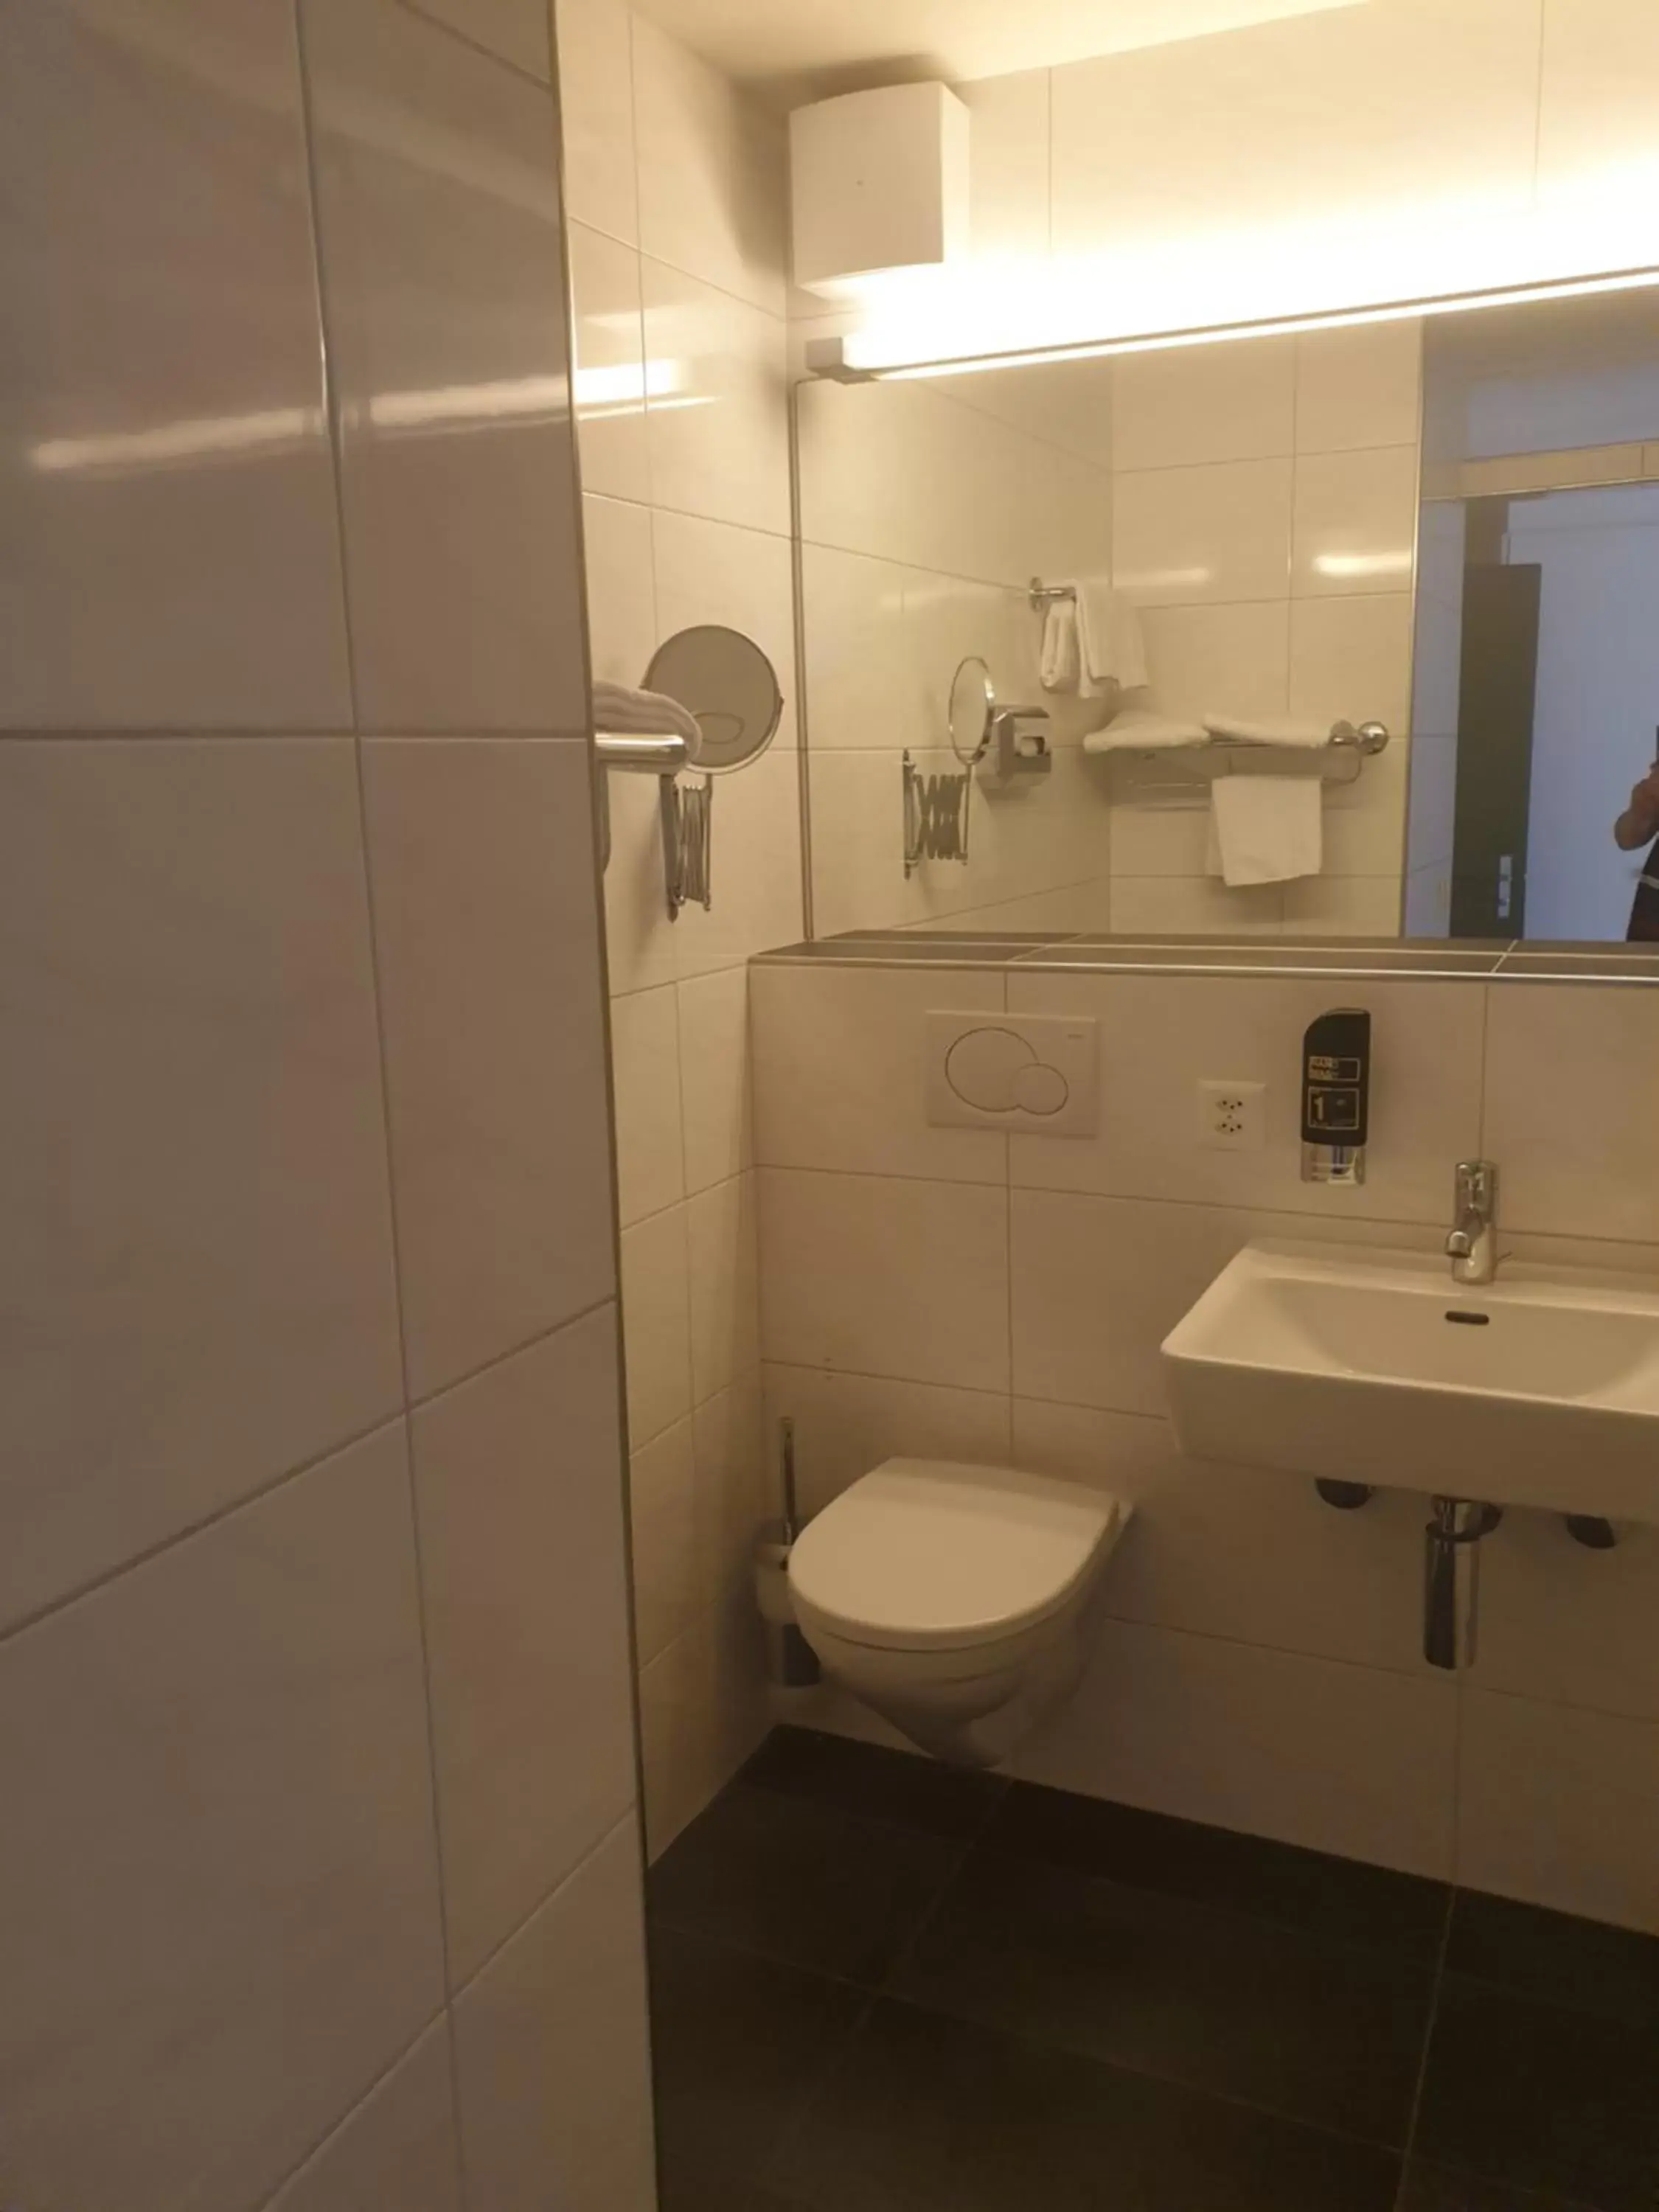 Bathroom in Das Hotel Sherlock Holmes